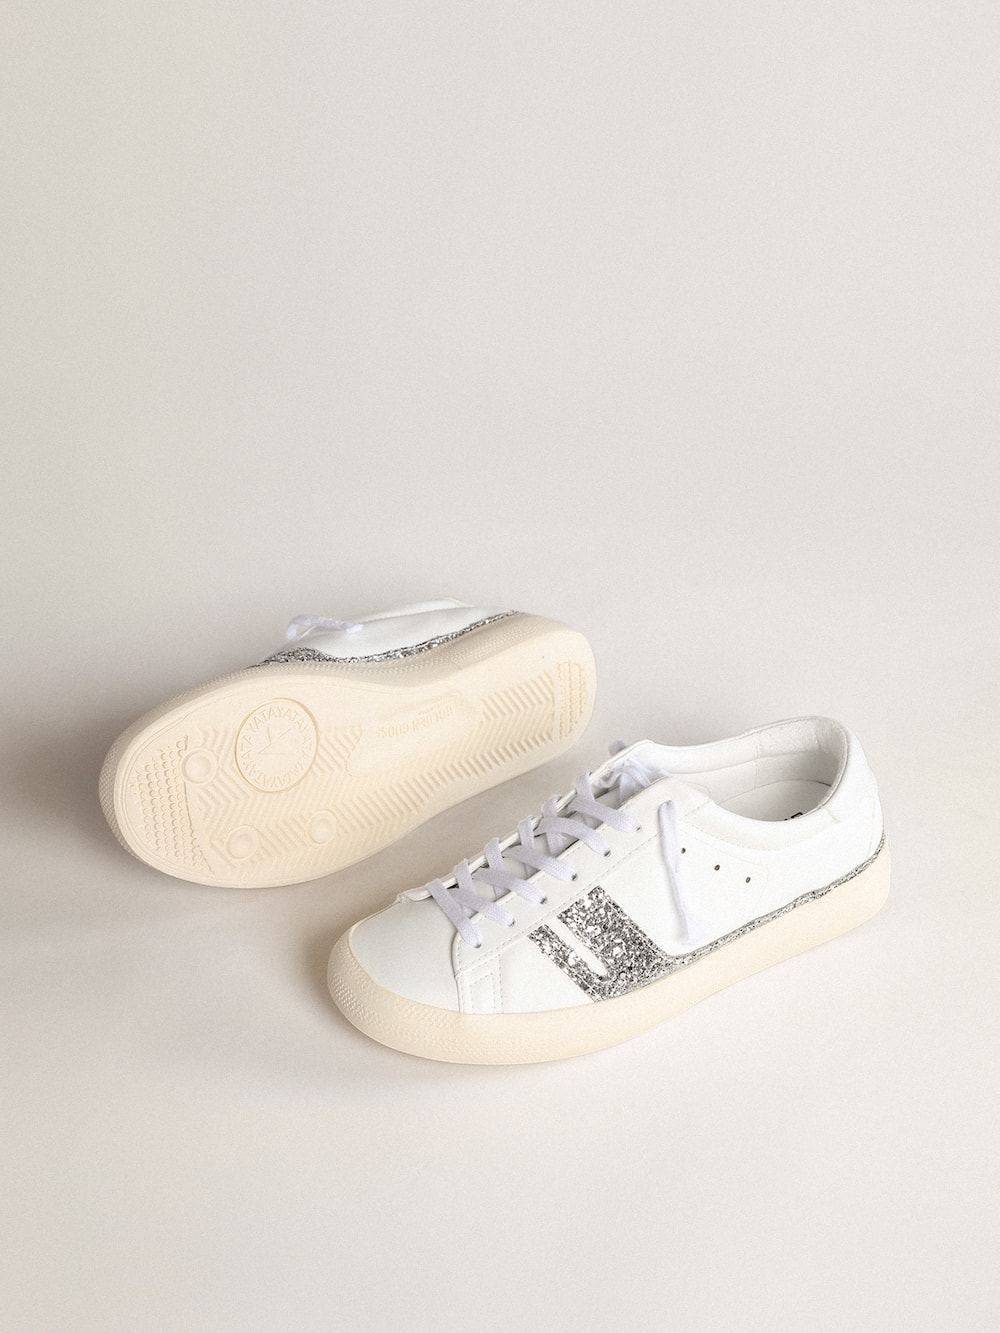 Golden Goose - Sneaker Yatay Model 1B sostenibile con tomaia bio-based bianca e Y in glitter argento riciclato in 